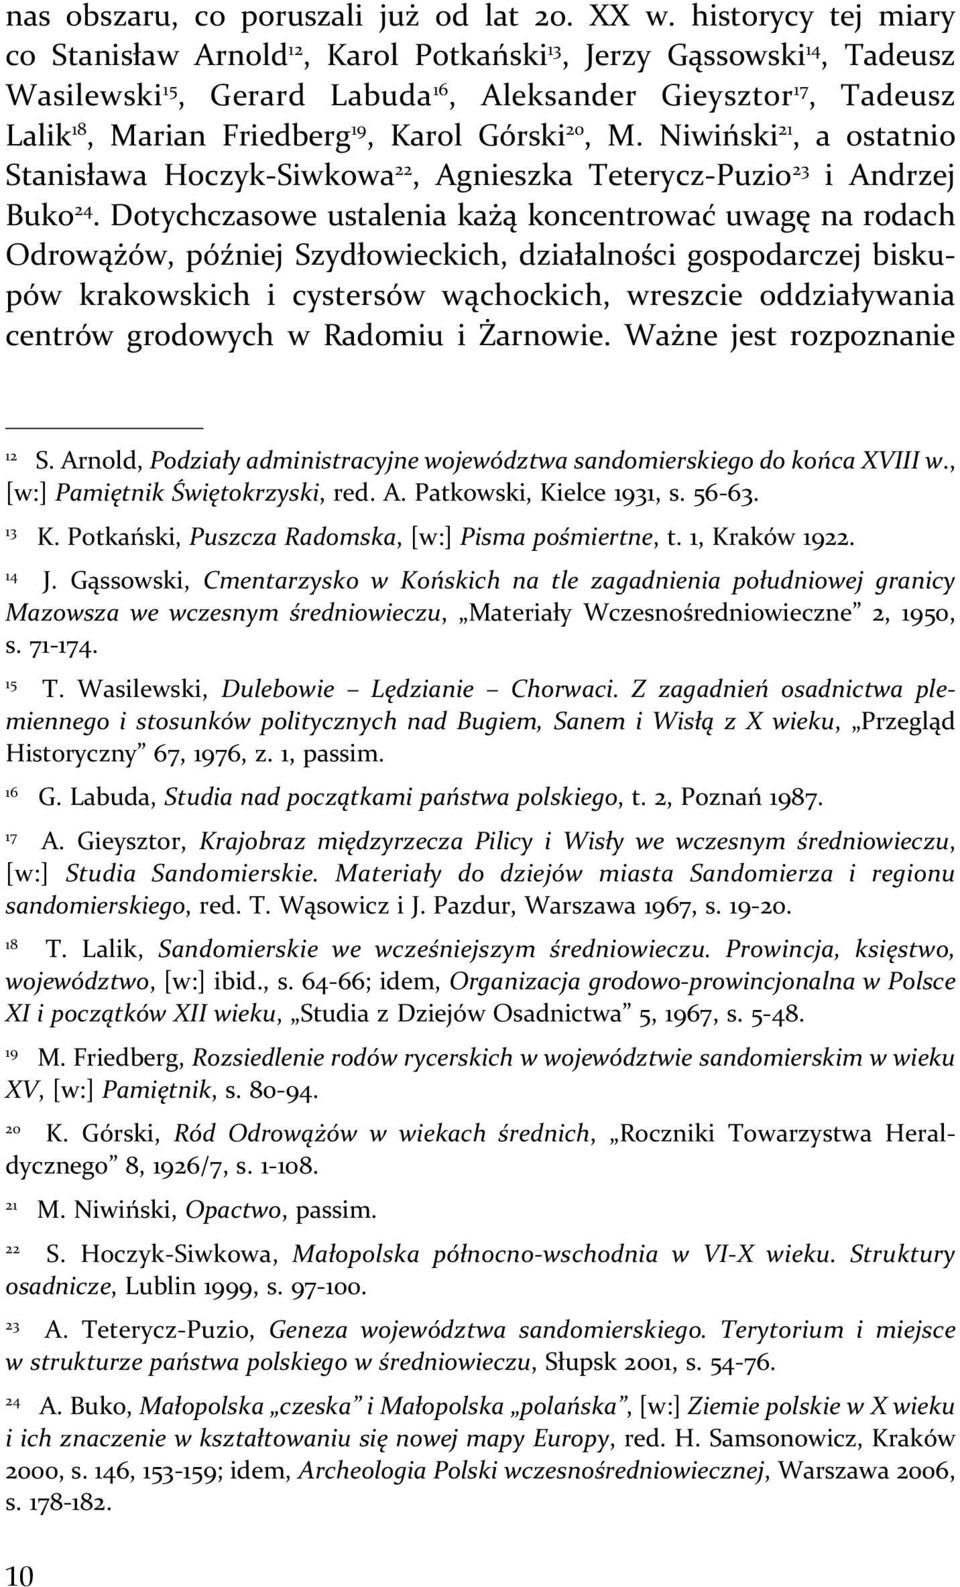 Górski 20, M. Niwiński 21, a ostatnio Stanisława Hoczyk-Siwkowa 22, Agnieszka Teterycz-Puzio 23 i Andrzej Buko 24.